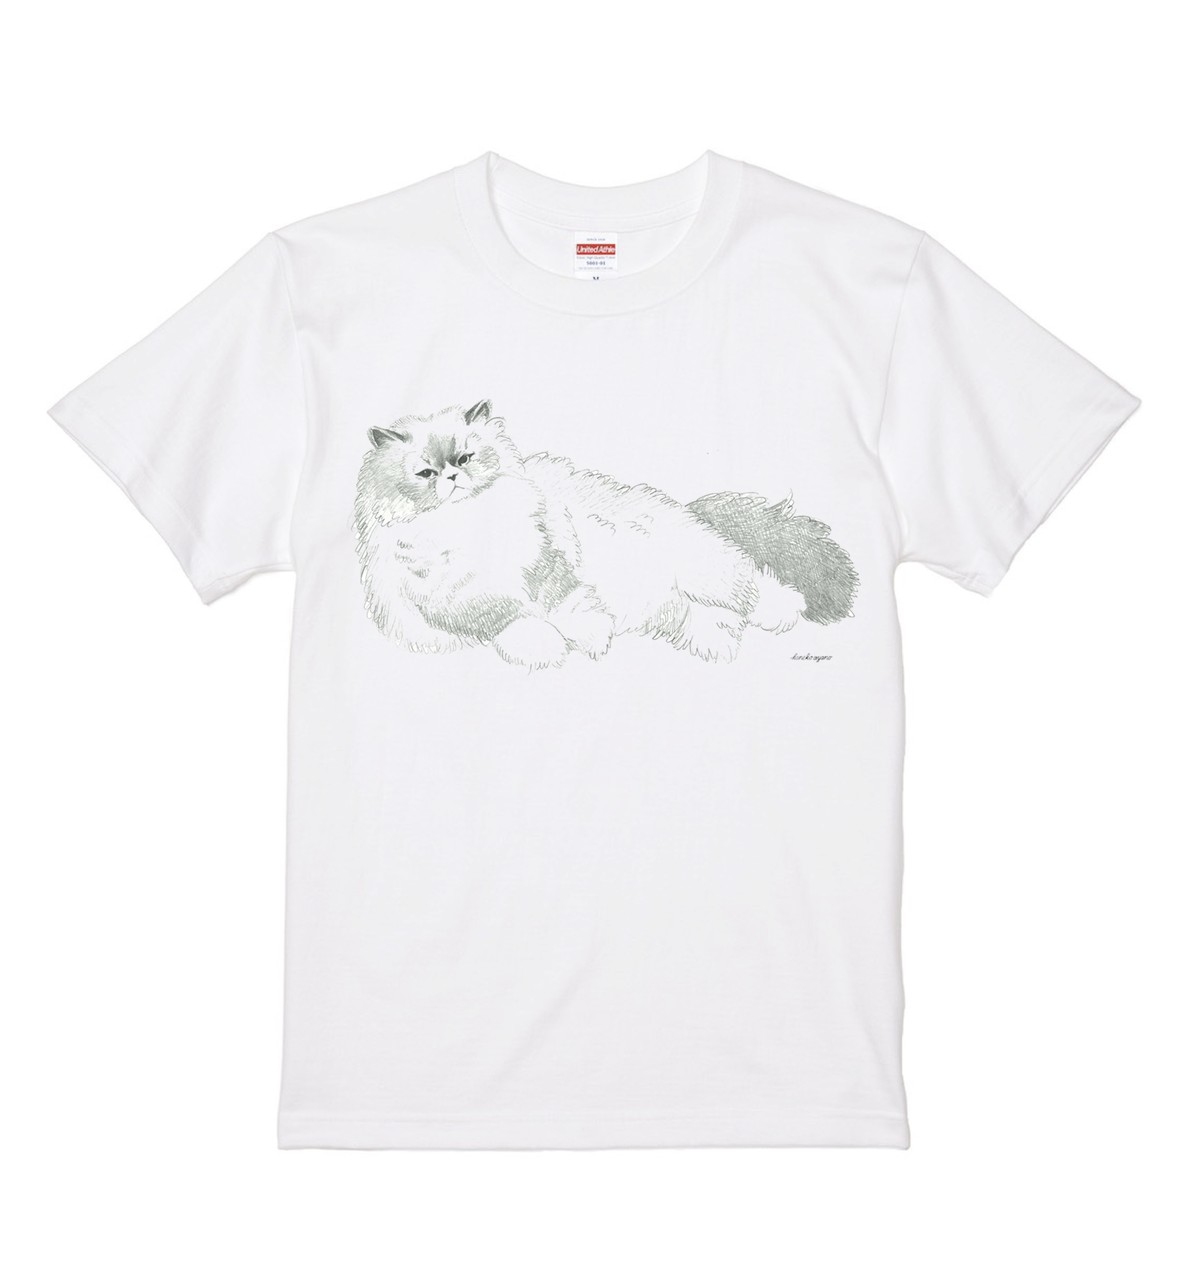 ねこtシャツ A カネコ商店 カネコアヤノ公式オンラインショップ